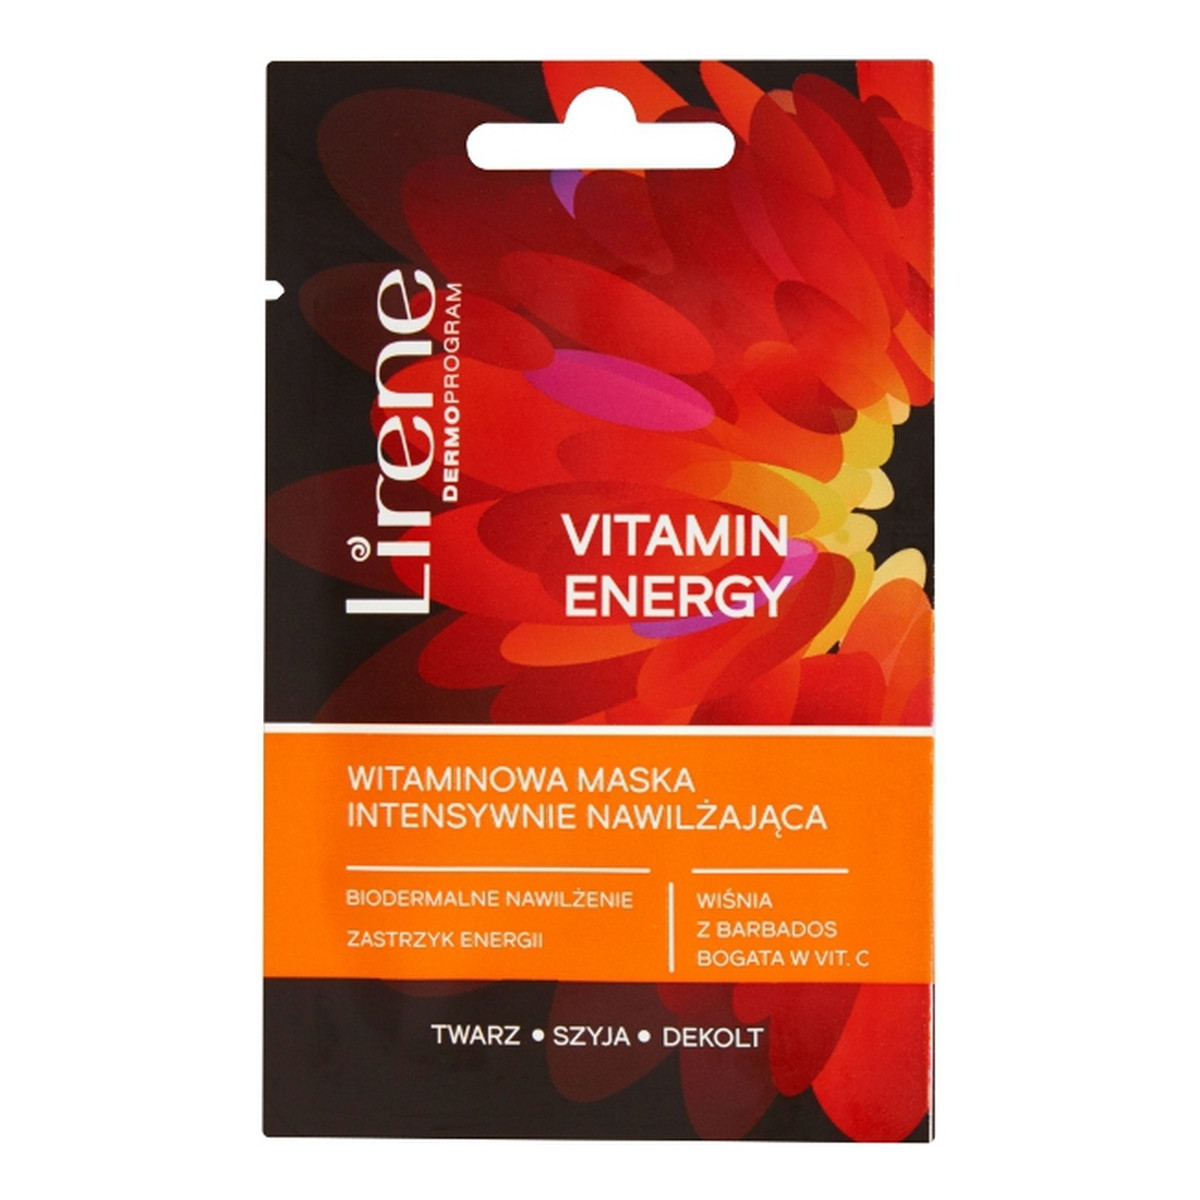 Lirene BEAUTY SOLUTIONS Vitamin Energy witaminowa maska intensywnie nawilżająca 8ml